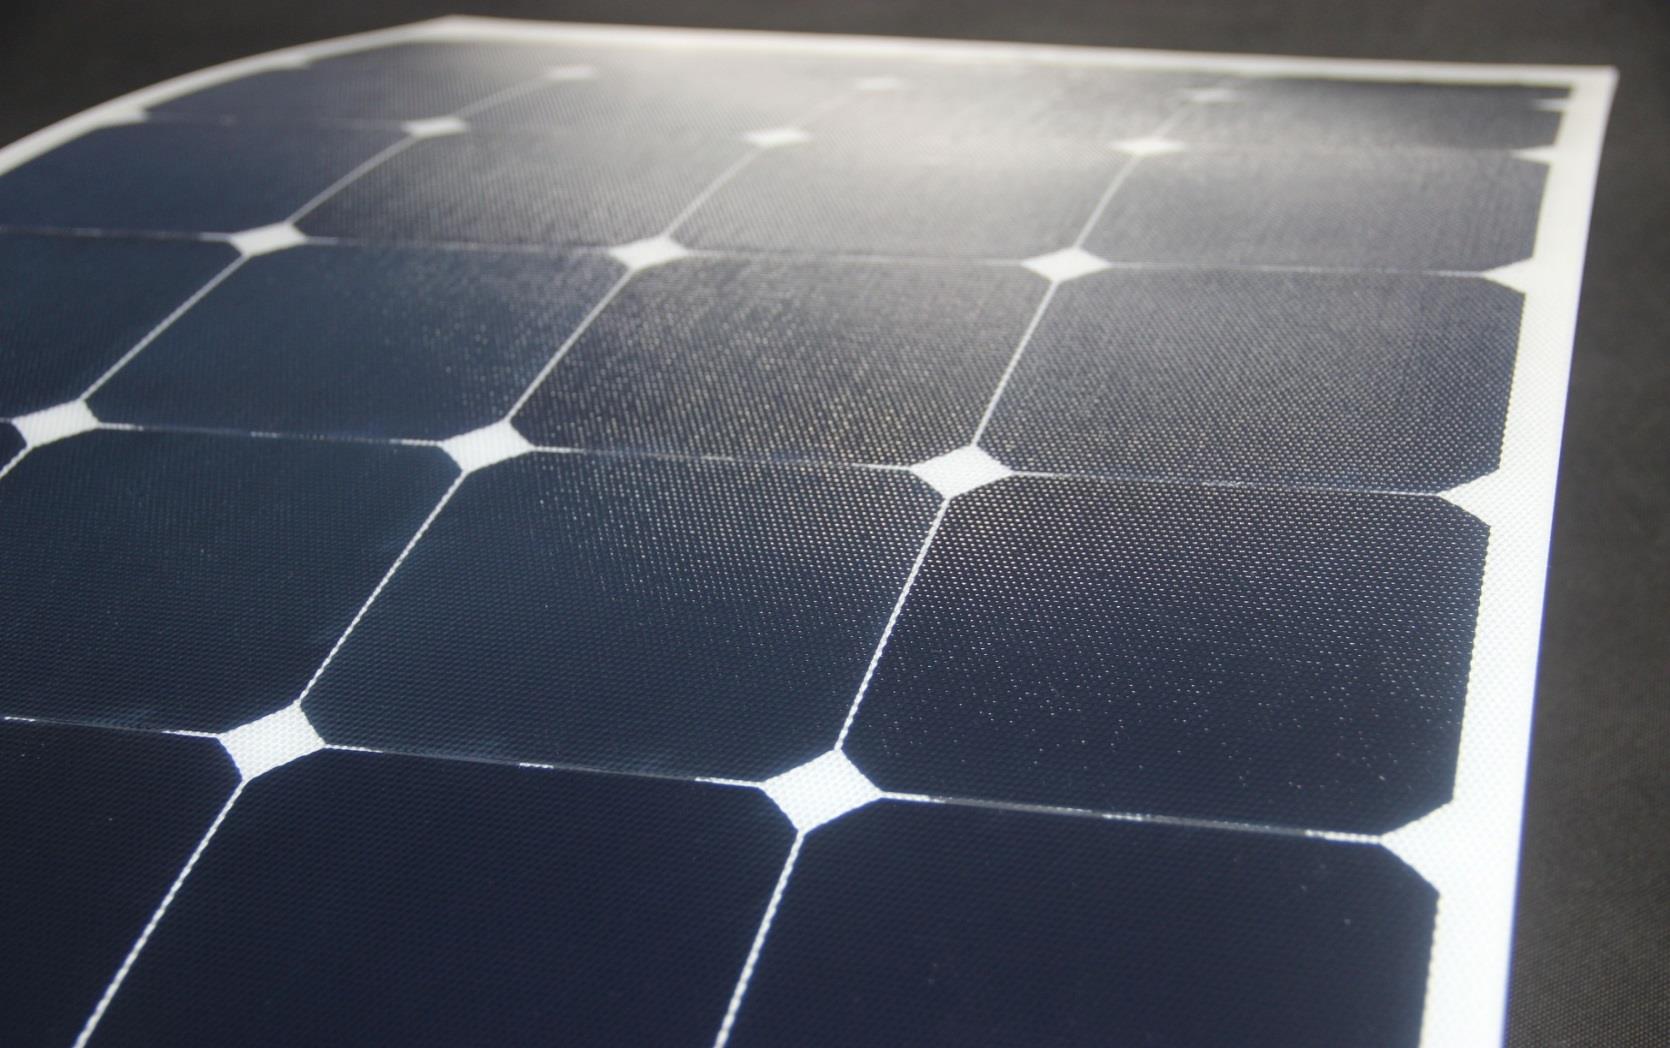 Zweeds Design Zeer hoge efficiëntie Sunpower cellen Duurzame materialen